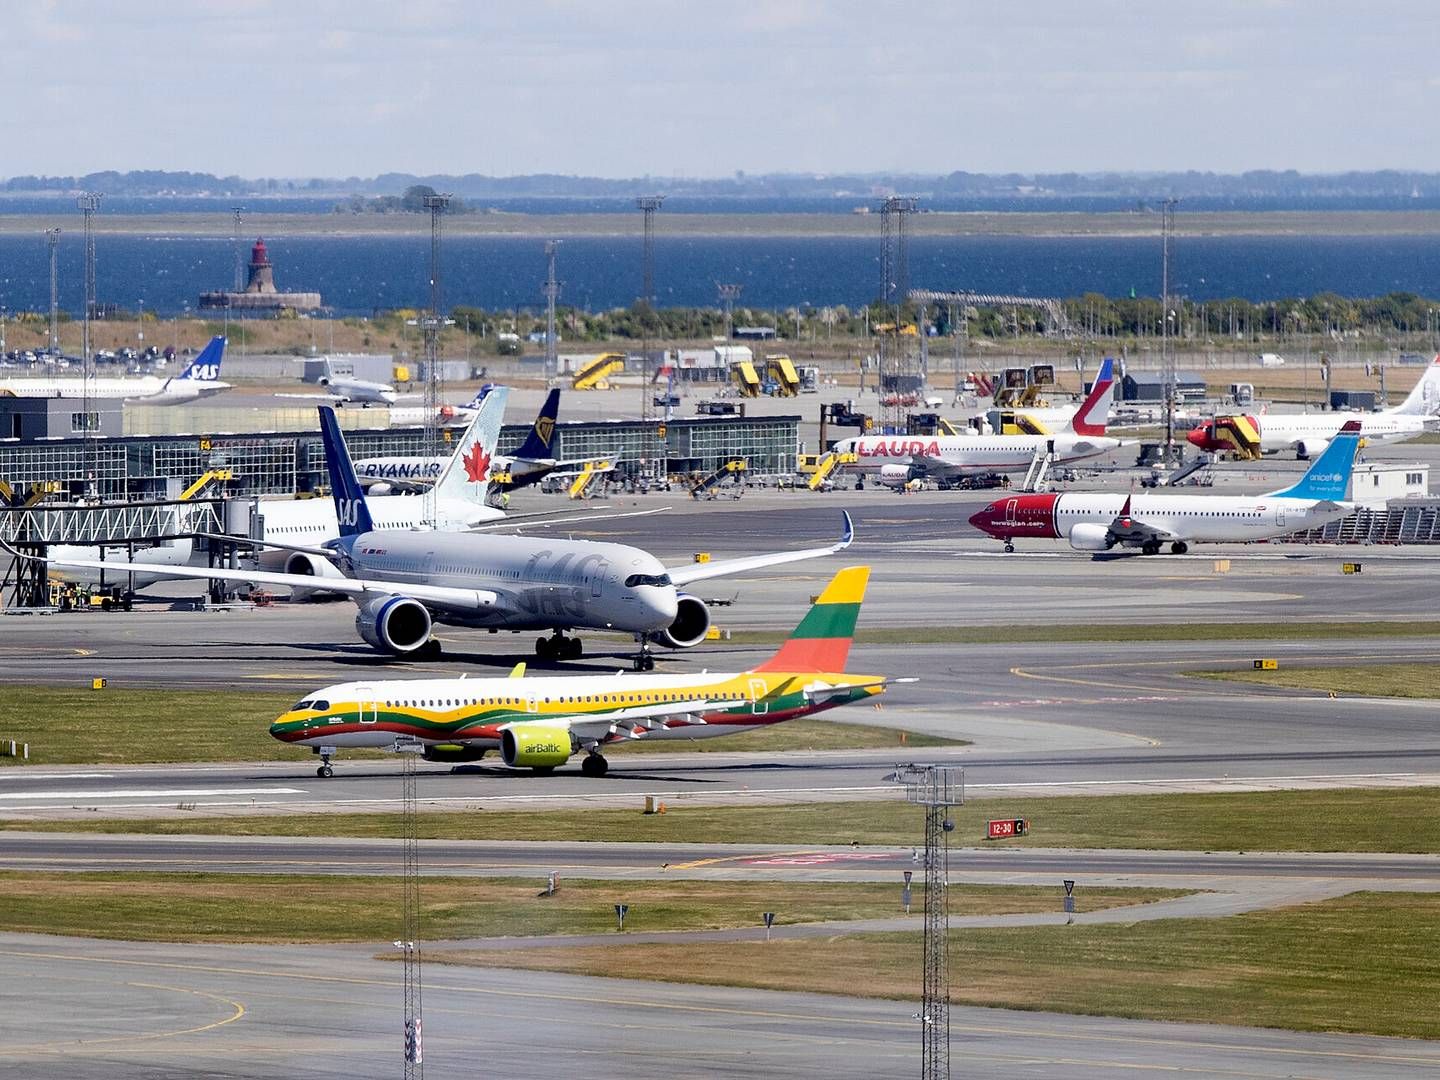 Også i Københavns Lufthavn vækker tallene bekymring, selvom lufthavnen primært har udenrigstrafik. | Foto: Finn Frandsen/Ritzau Scanpix